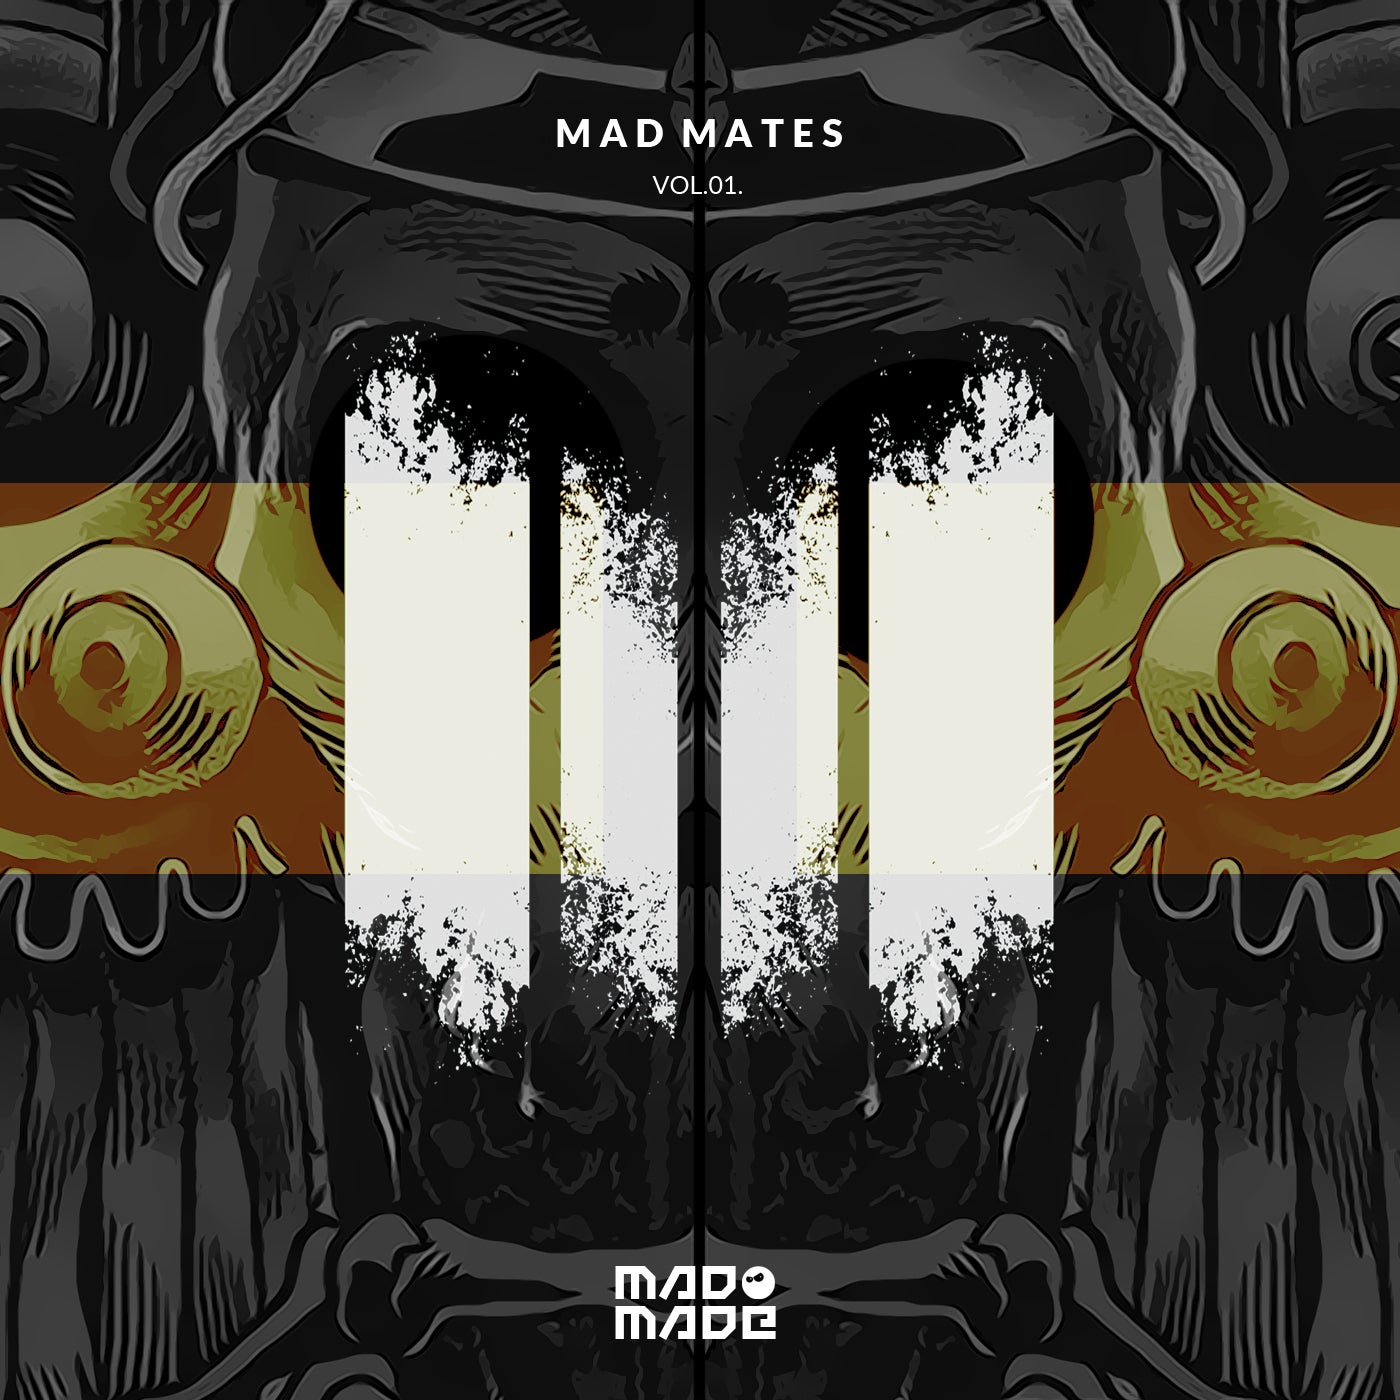 Mad Mates Vol.01.